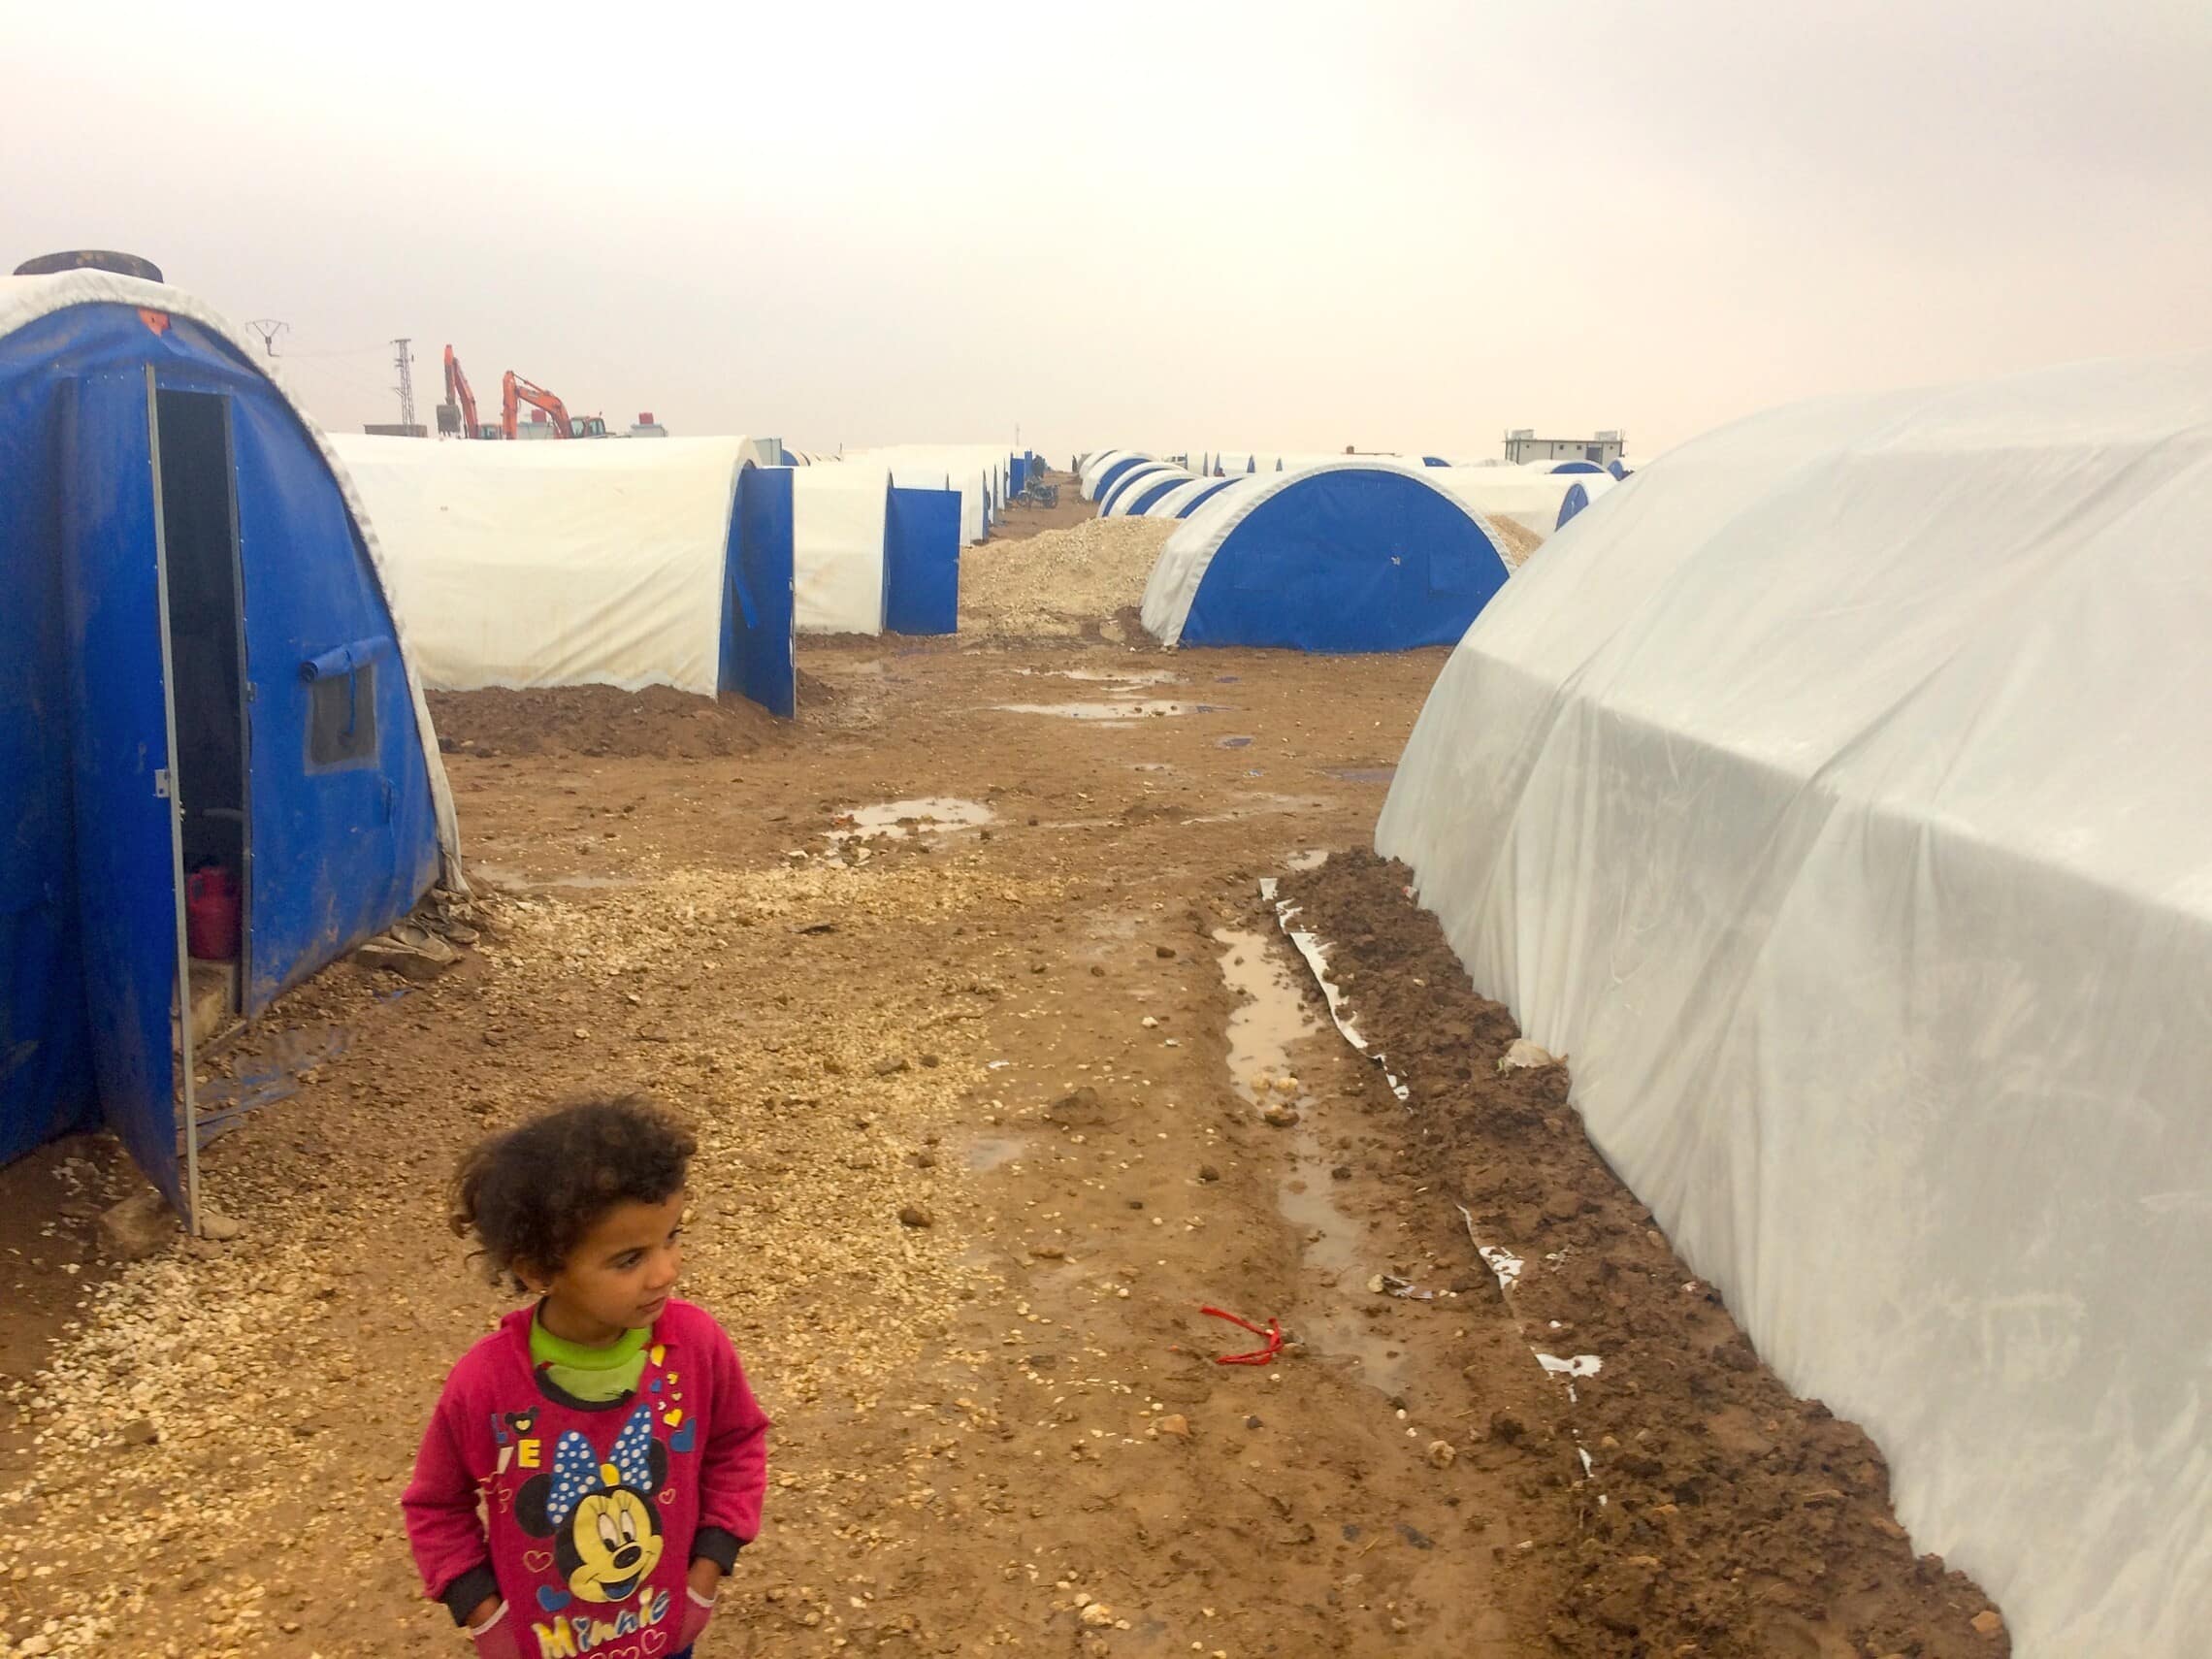 ילדה במחנה פליטים בצפון מזרח סוריה (צילום: Karlos Zurutuza/Ronak Press)